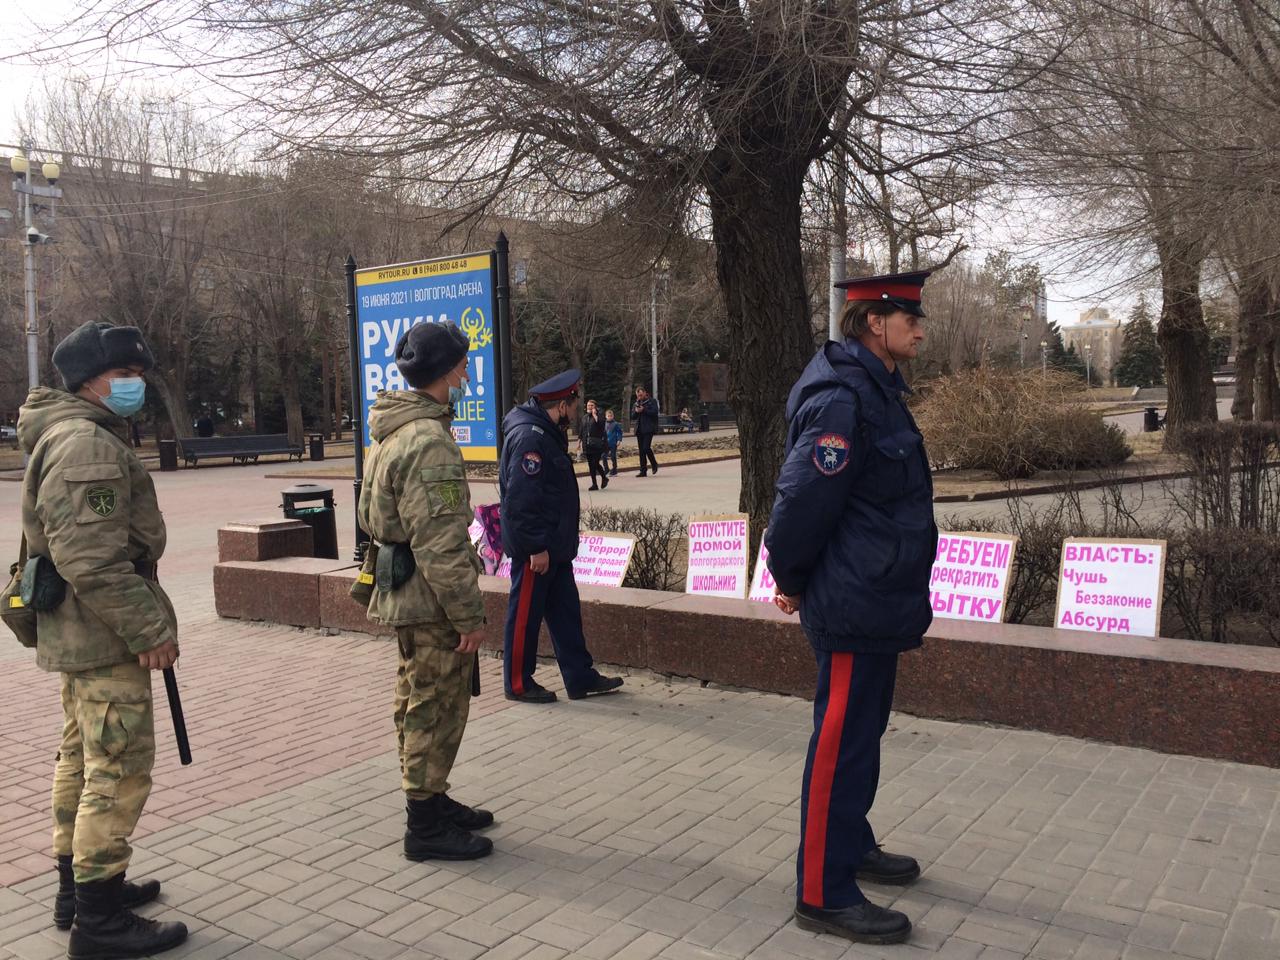 Казаки и полицейские читают плакаты пикетчиков в Волгограде. 3 апреля 2021 года. Фото Татьяны Филимоновой для "Кавказского узла".